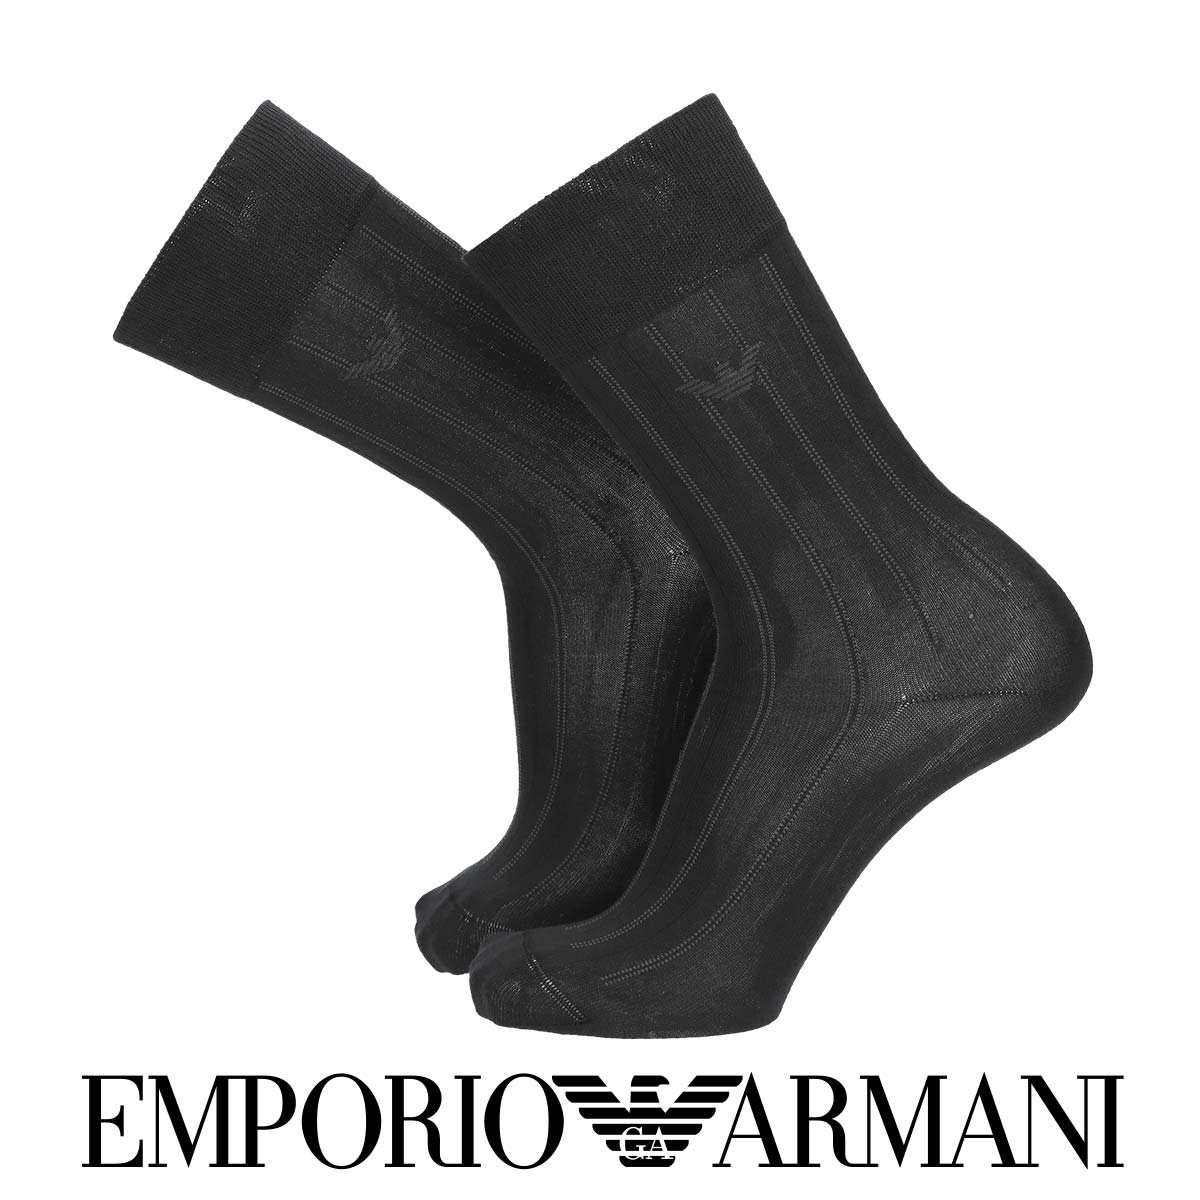 エンポリオ アルマーニ 靴下 メンズ EMPORIO ARMANI エンポリオ アルマーニ ストライプ イーグルカット柄 クルー丈 ビジネス ソックス メンズ 靴下 男性 紳士 プレゼント ギフト 02312538